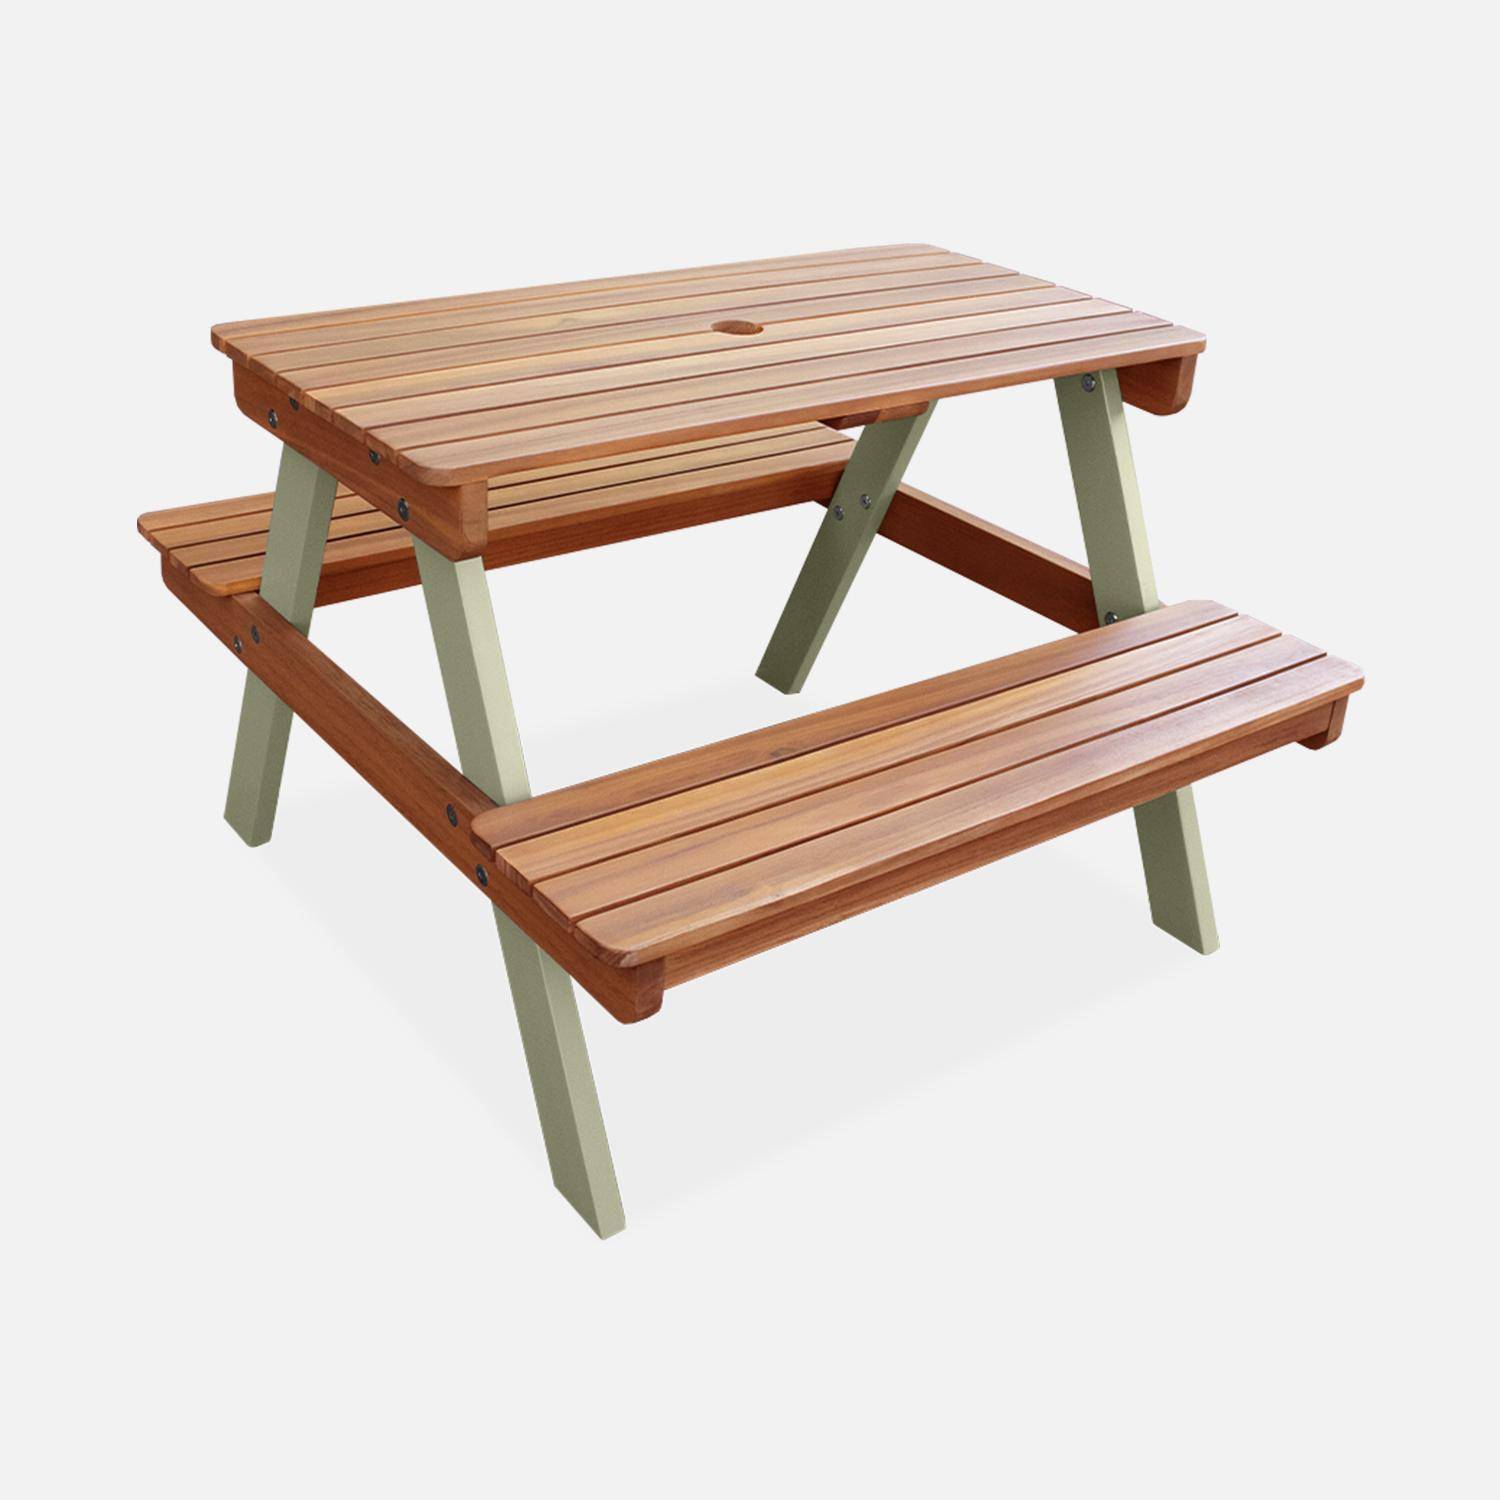 Picknicktisch aus hellem Akazienholz für Kinder, 2 Sitzplätze, naturfarben und graugrün,sweeek,Photo3